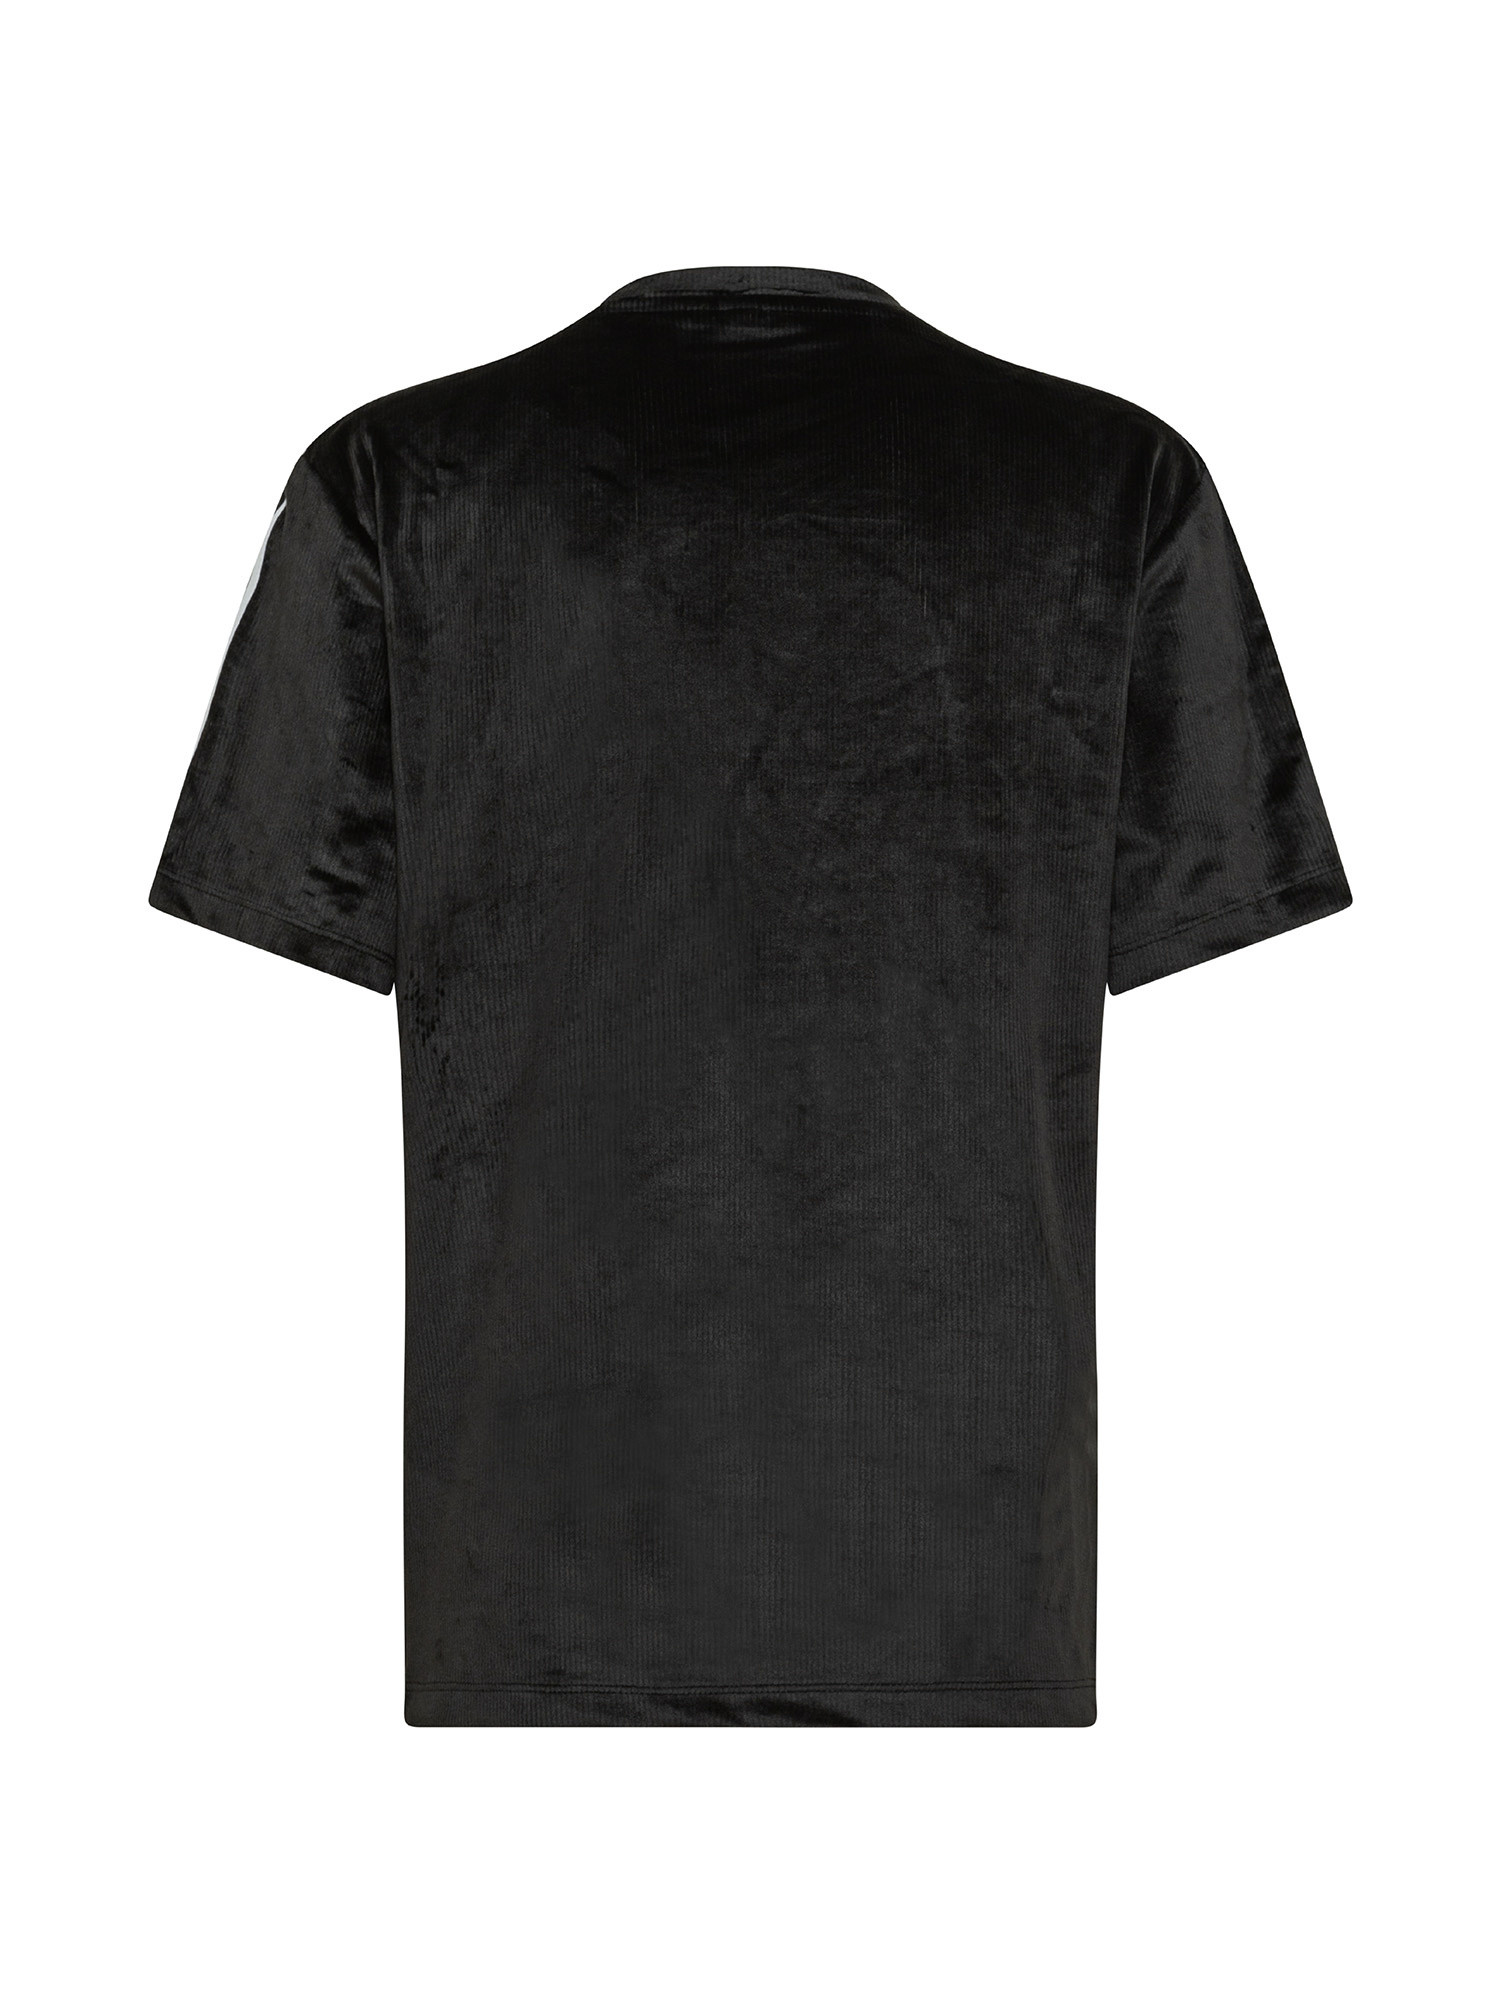 Essentials T-Shirt, Black, large image number 1